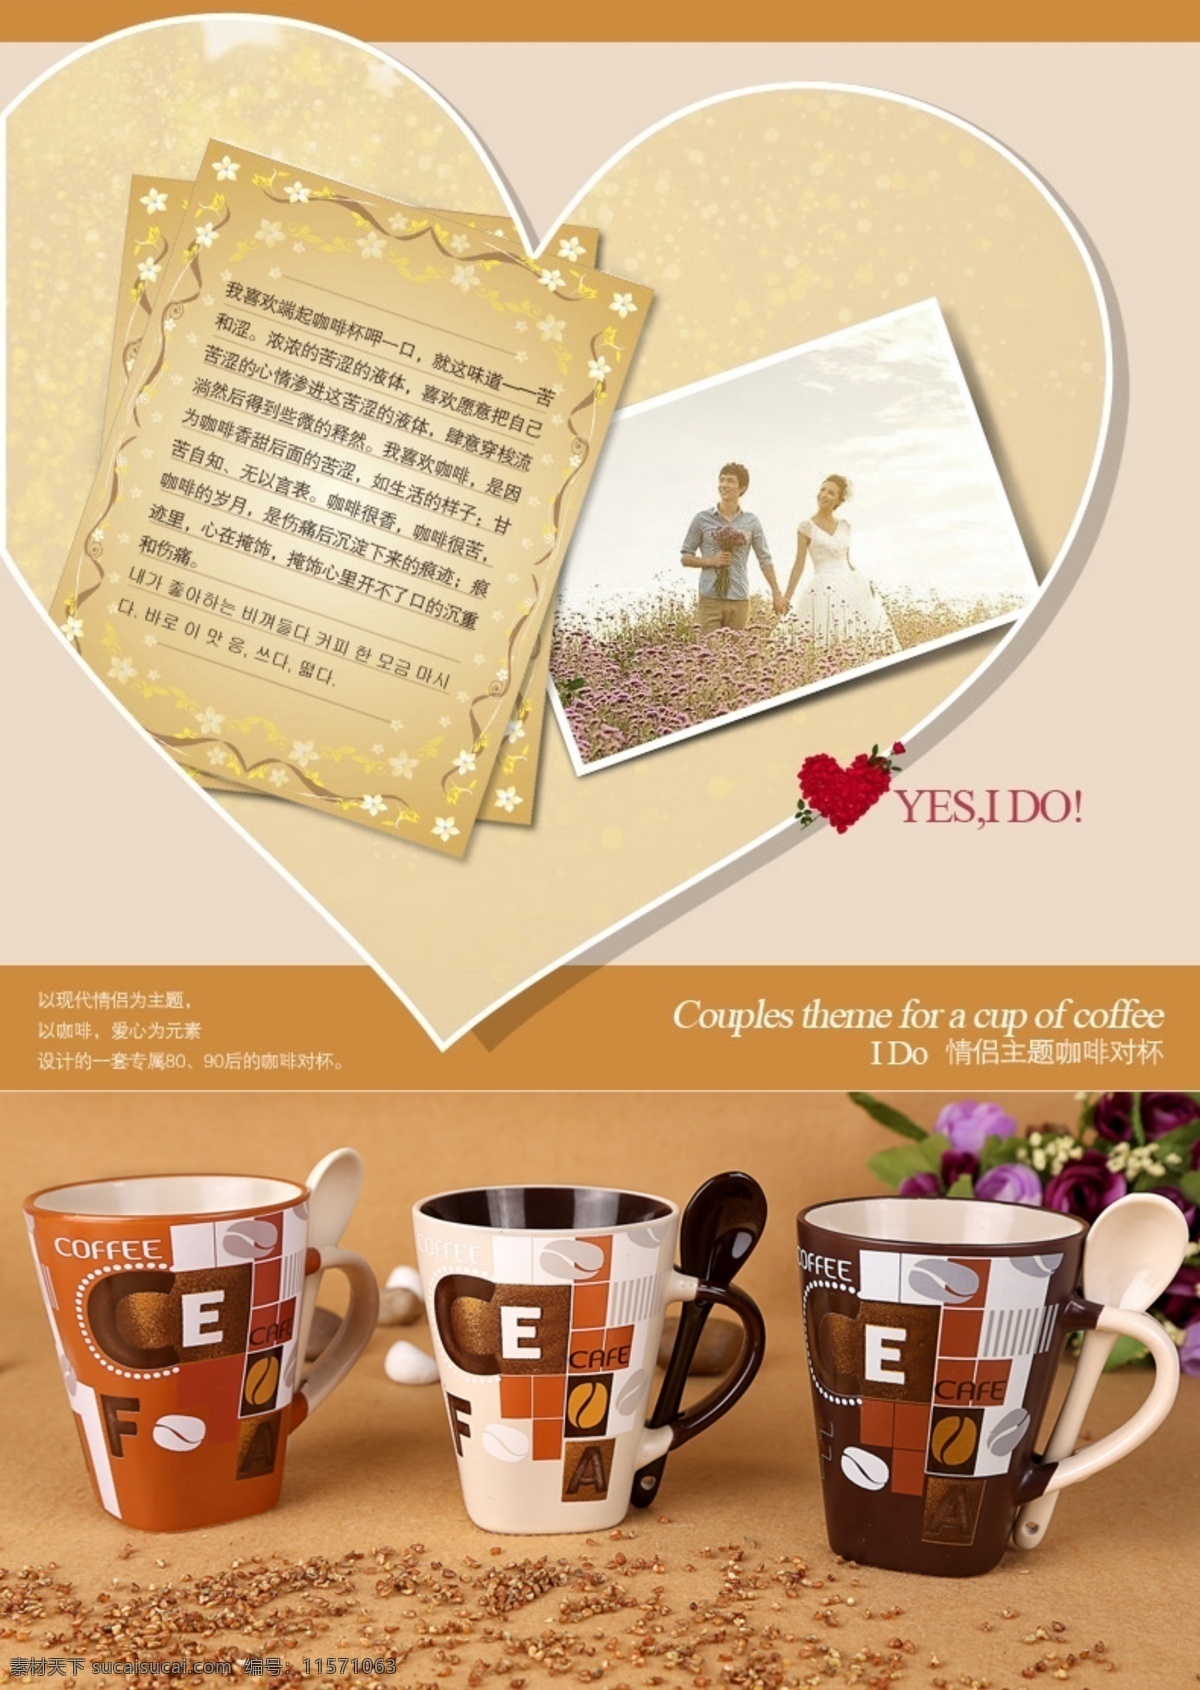 咖啡杯 广告 图 咖啡广告 爱意浓浓 爱的表达 原创设计 原创淘宝设计